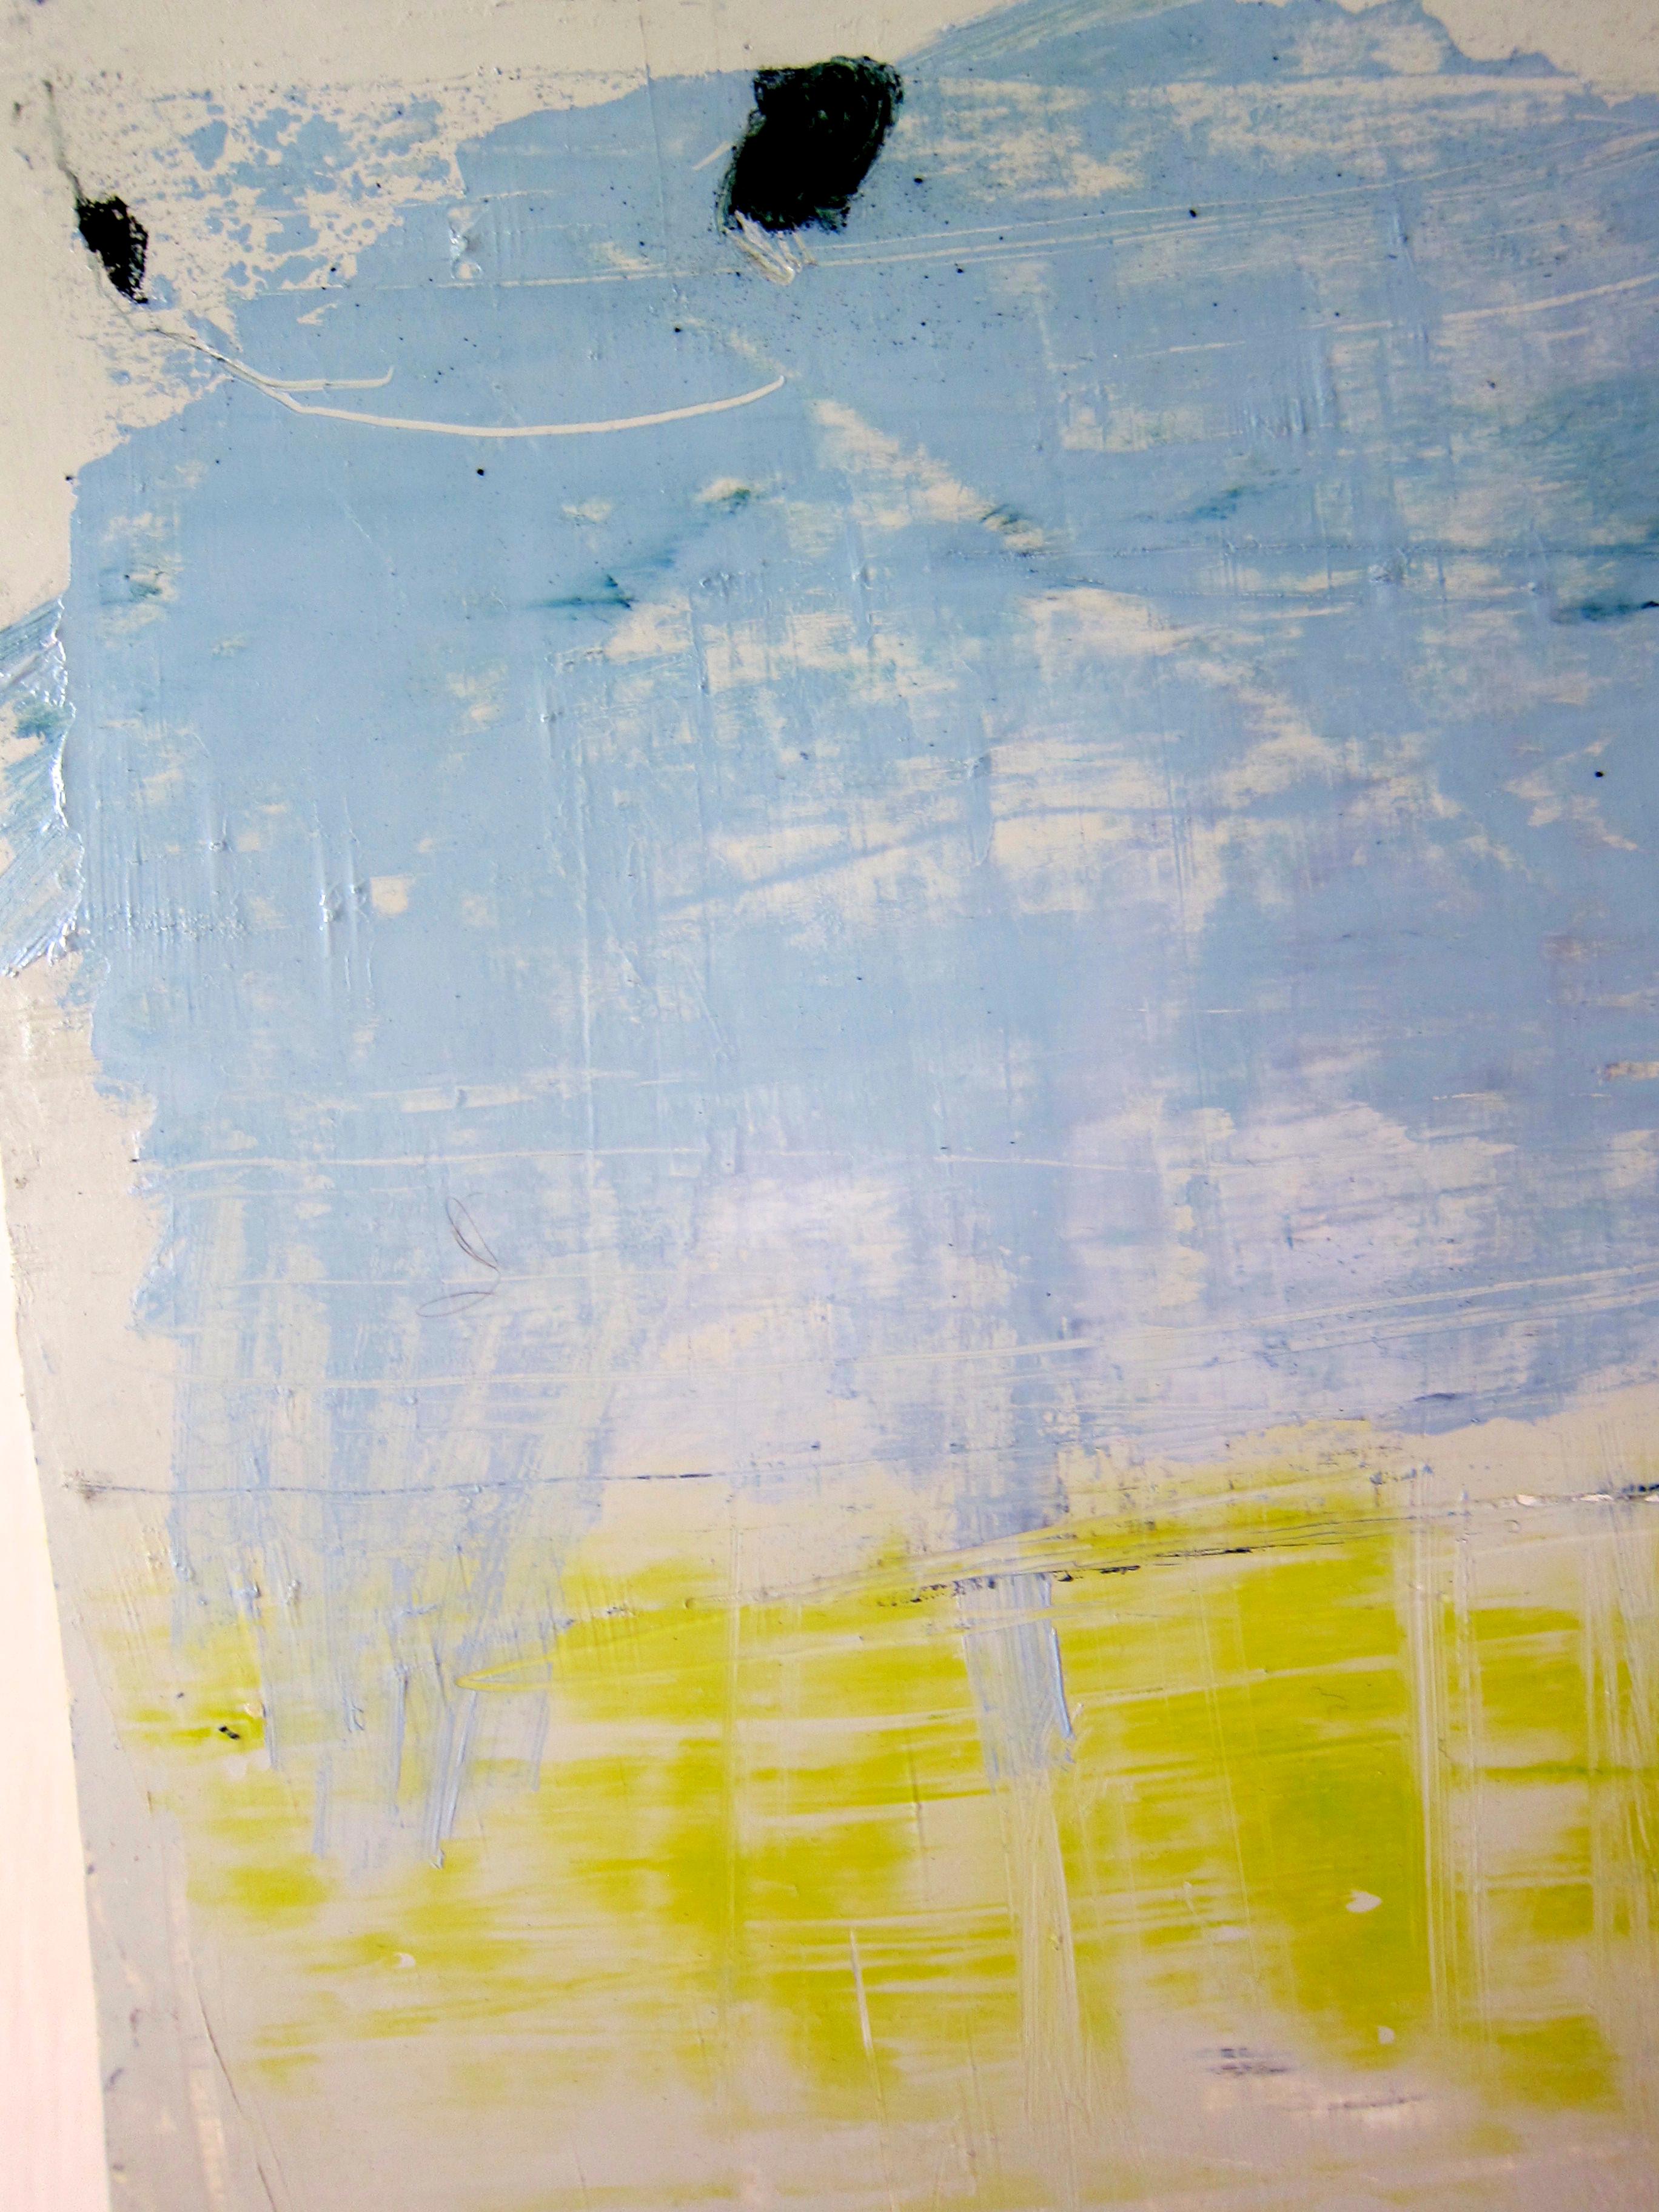 Ocean, Sea and Sky: minimalist, oil, pastel on paper, 2012